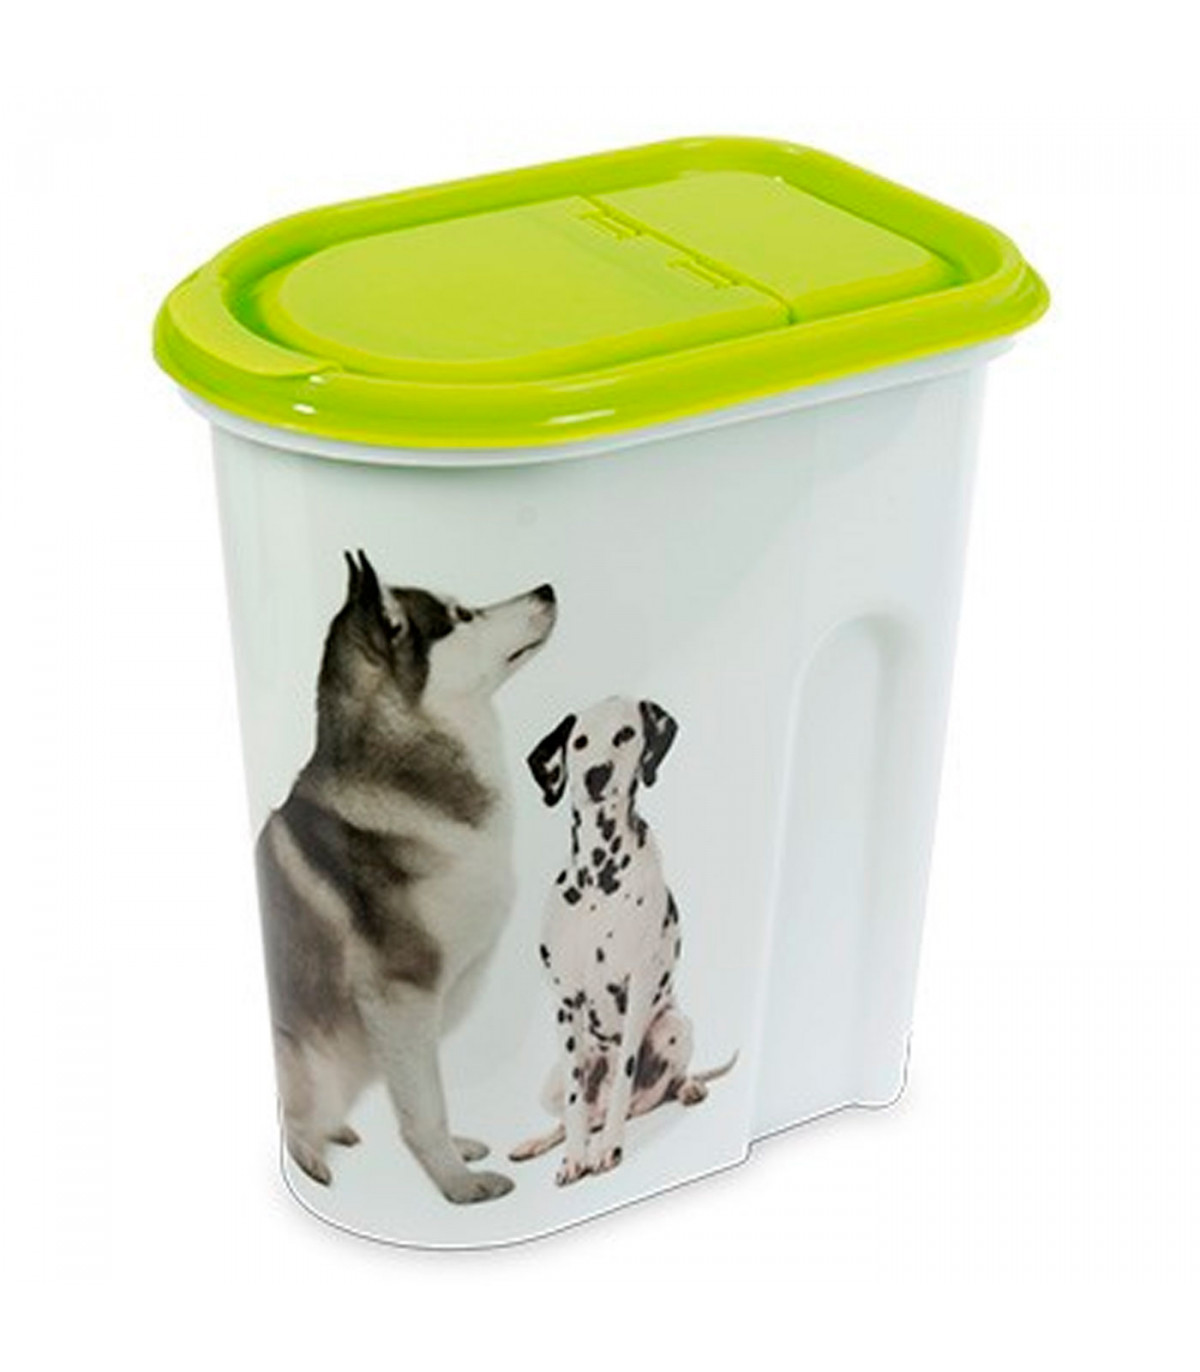 Contenedor de comida mascotas, tapa abatible, bote, tarro, recipiente para  pienso, perros, gatos, 2 litros, 20 x 18,2 x 11,5 cm